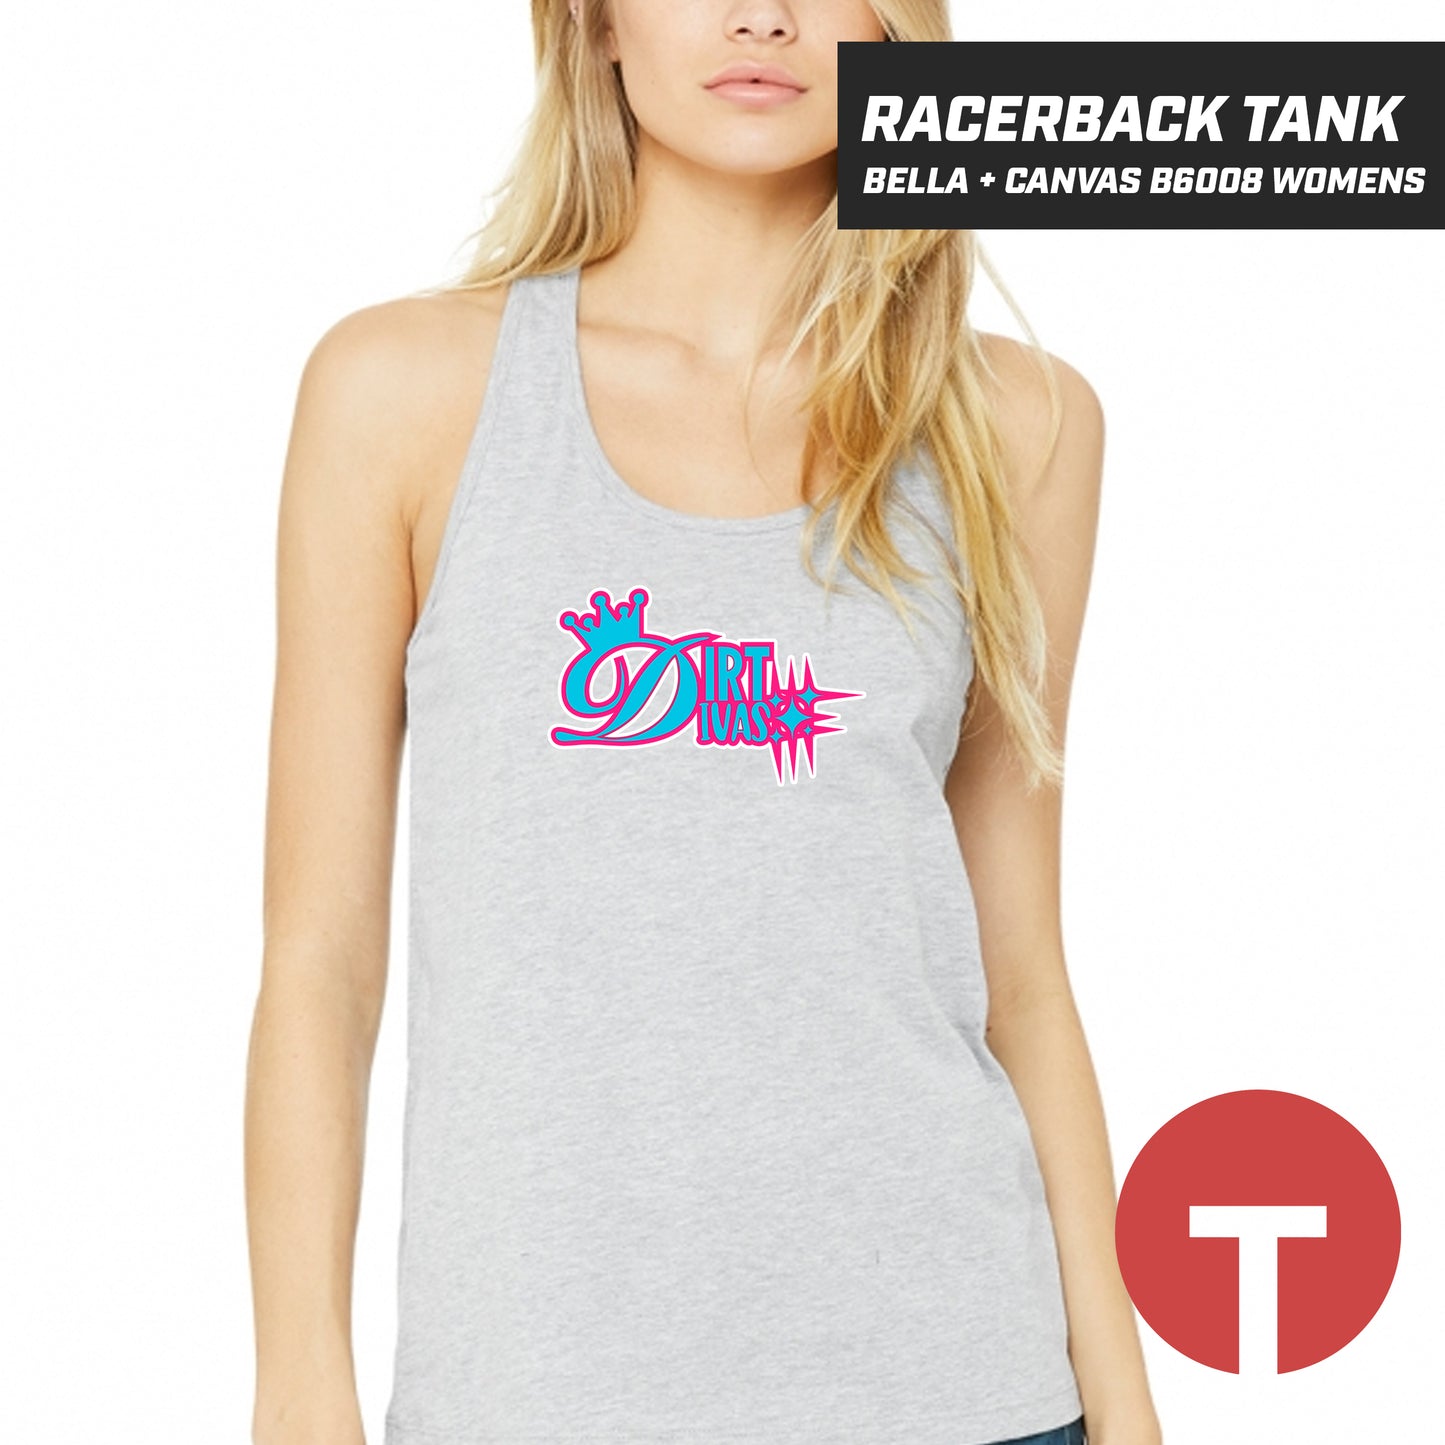 Dirt Divas - Bella + Canvas B6008 Women's Jersey Racerback Tank